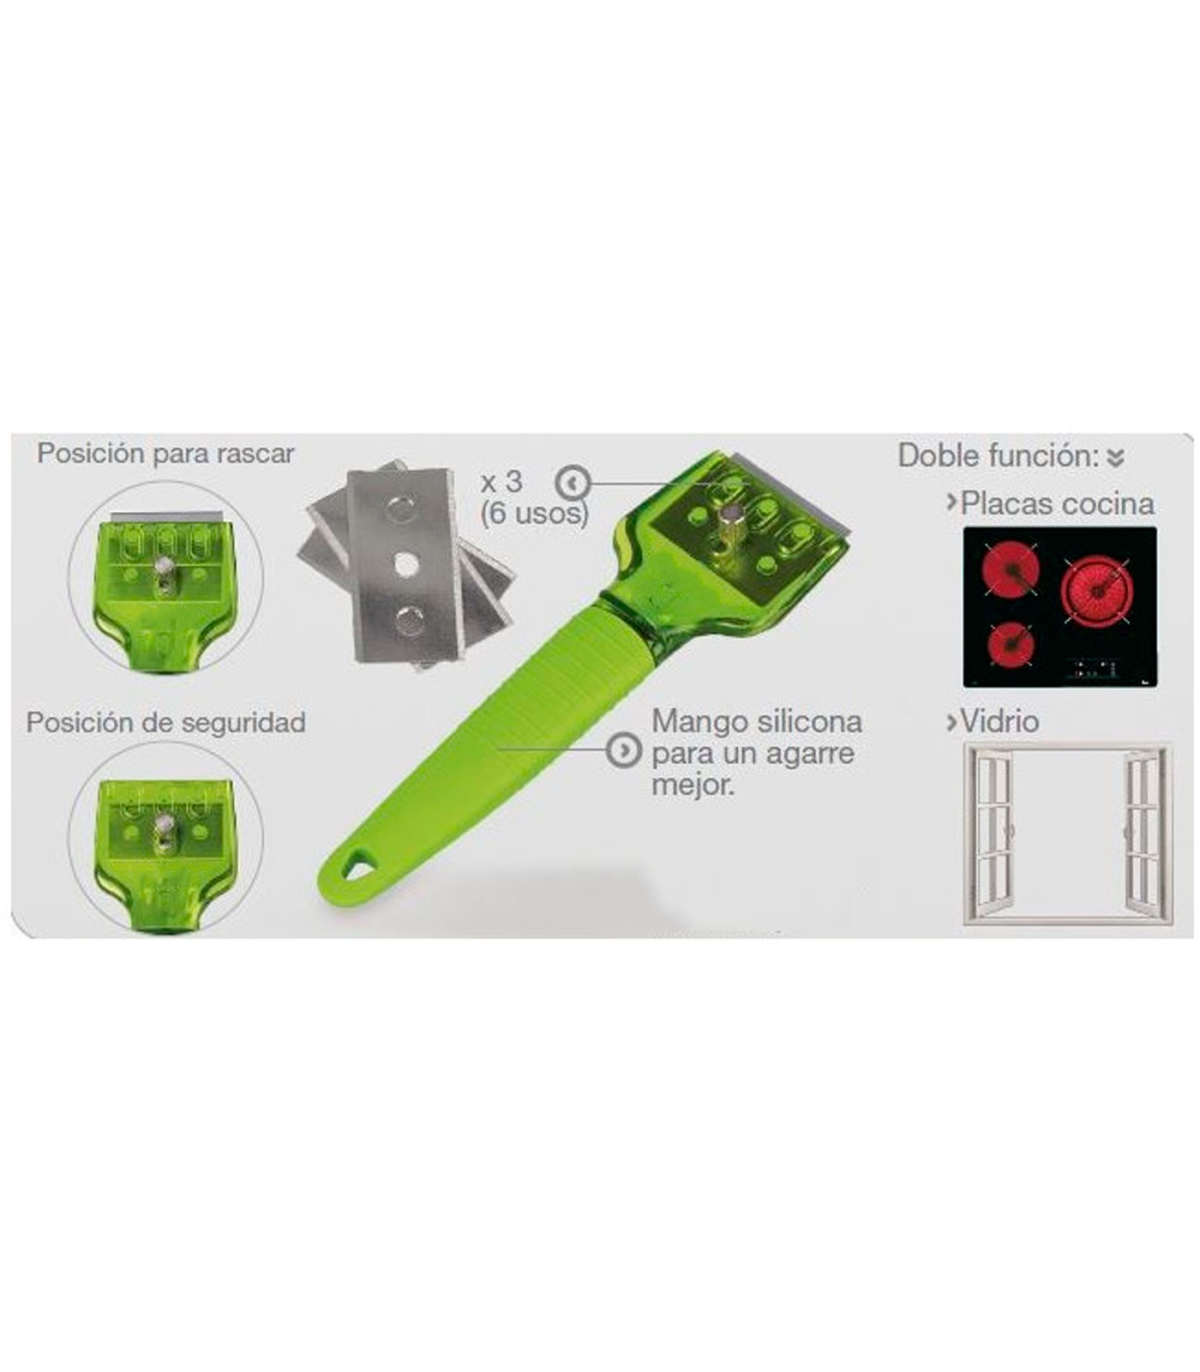 Tradineur - Rascador de vidrio y vitrocerámica, rasqueta placas inducción,  incluye 3 cuchillas, mango de silicona, protector de